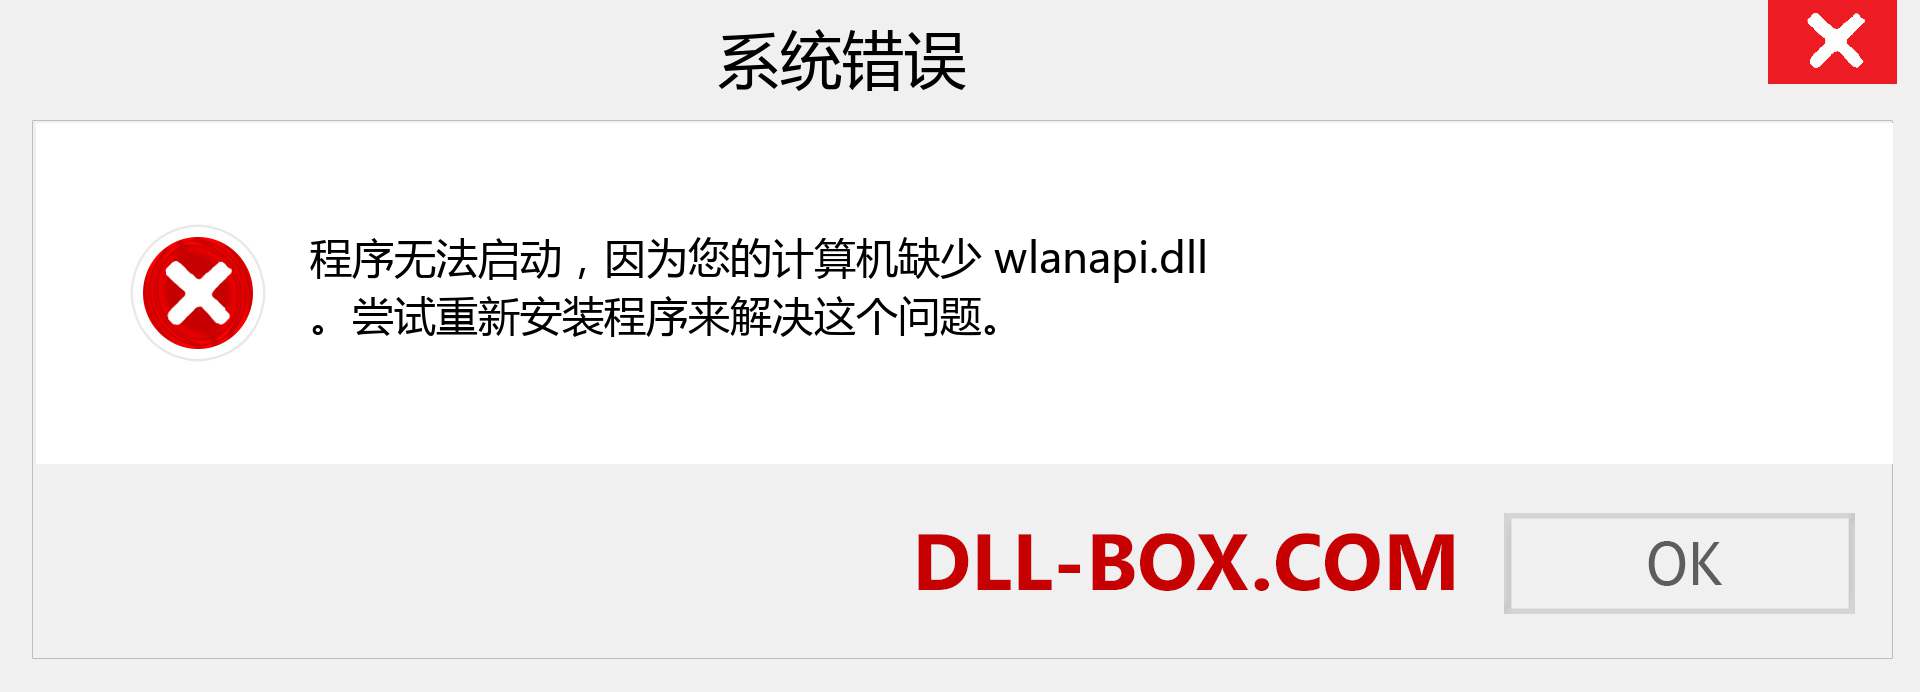 wlanapi.dll 文件丢失？。 适用于 Windows 7、8、10 的下载 - 修复 Windows、照片、图像上的 wlanapi dll 丢失错误